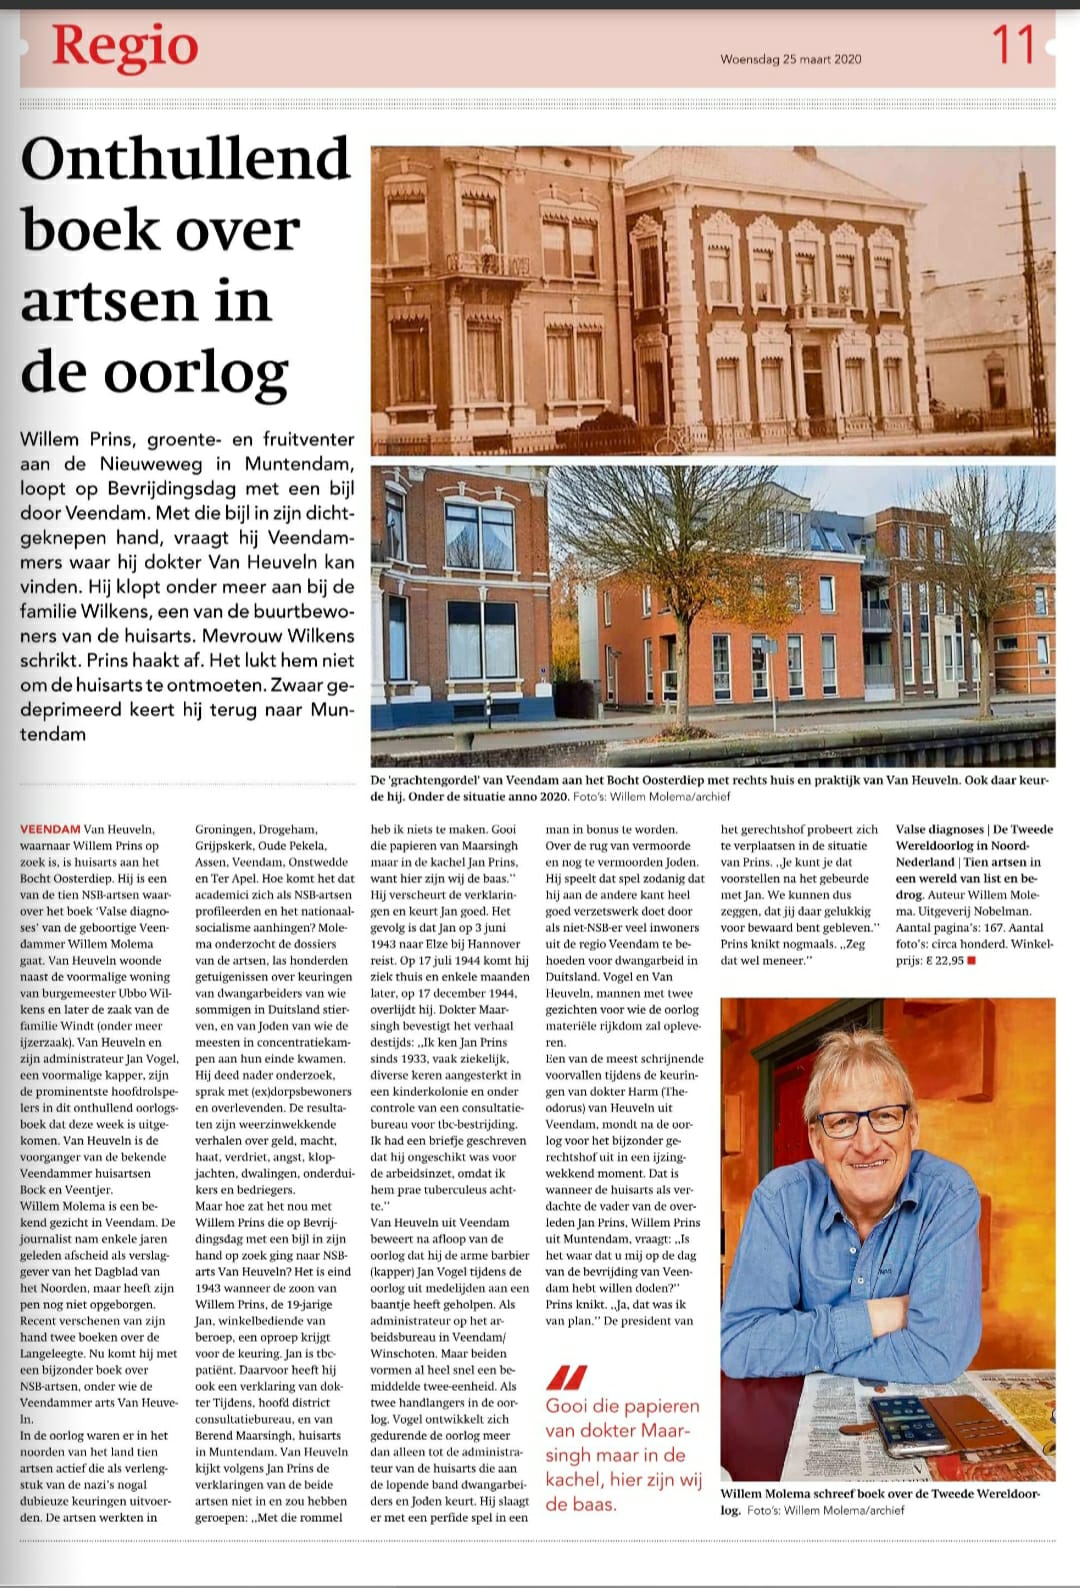 Artikel over Valse diagnoses in de regionale krant van Veendam